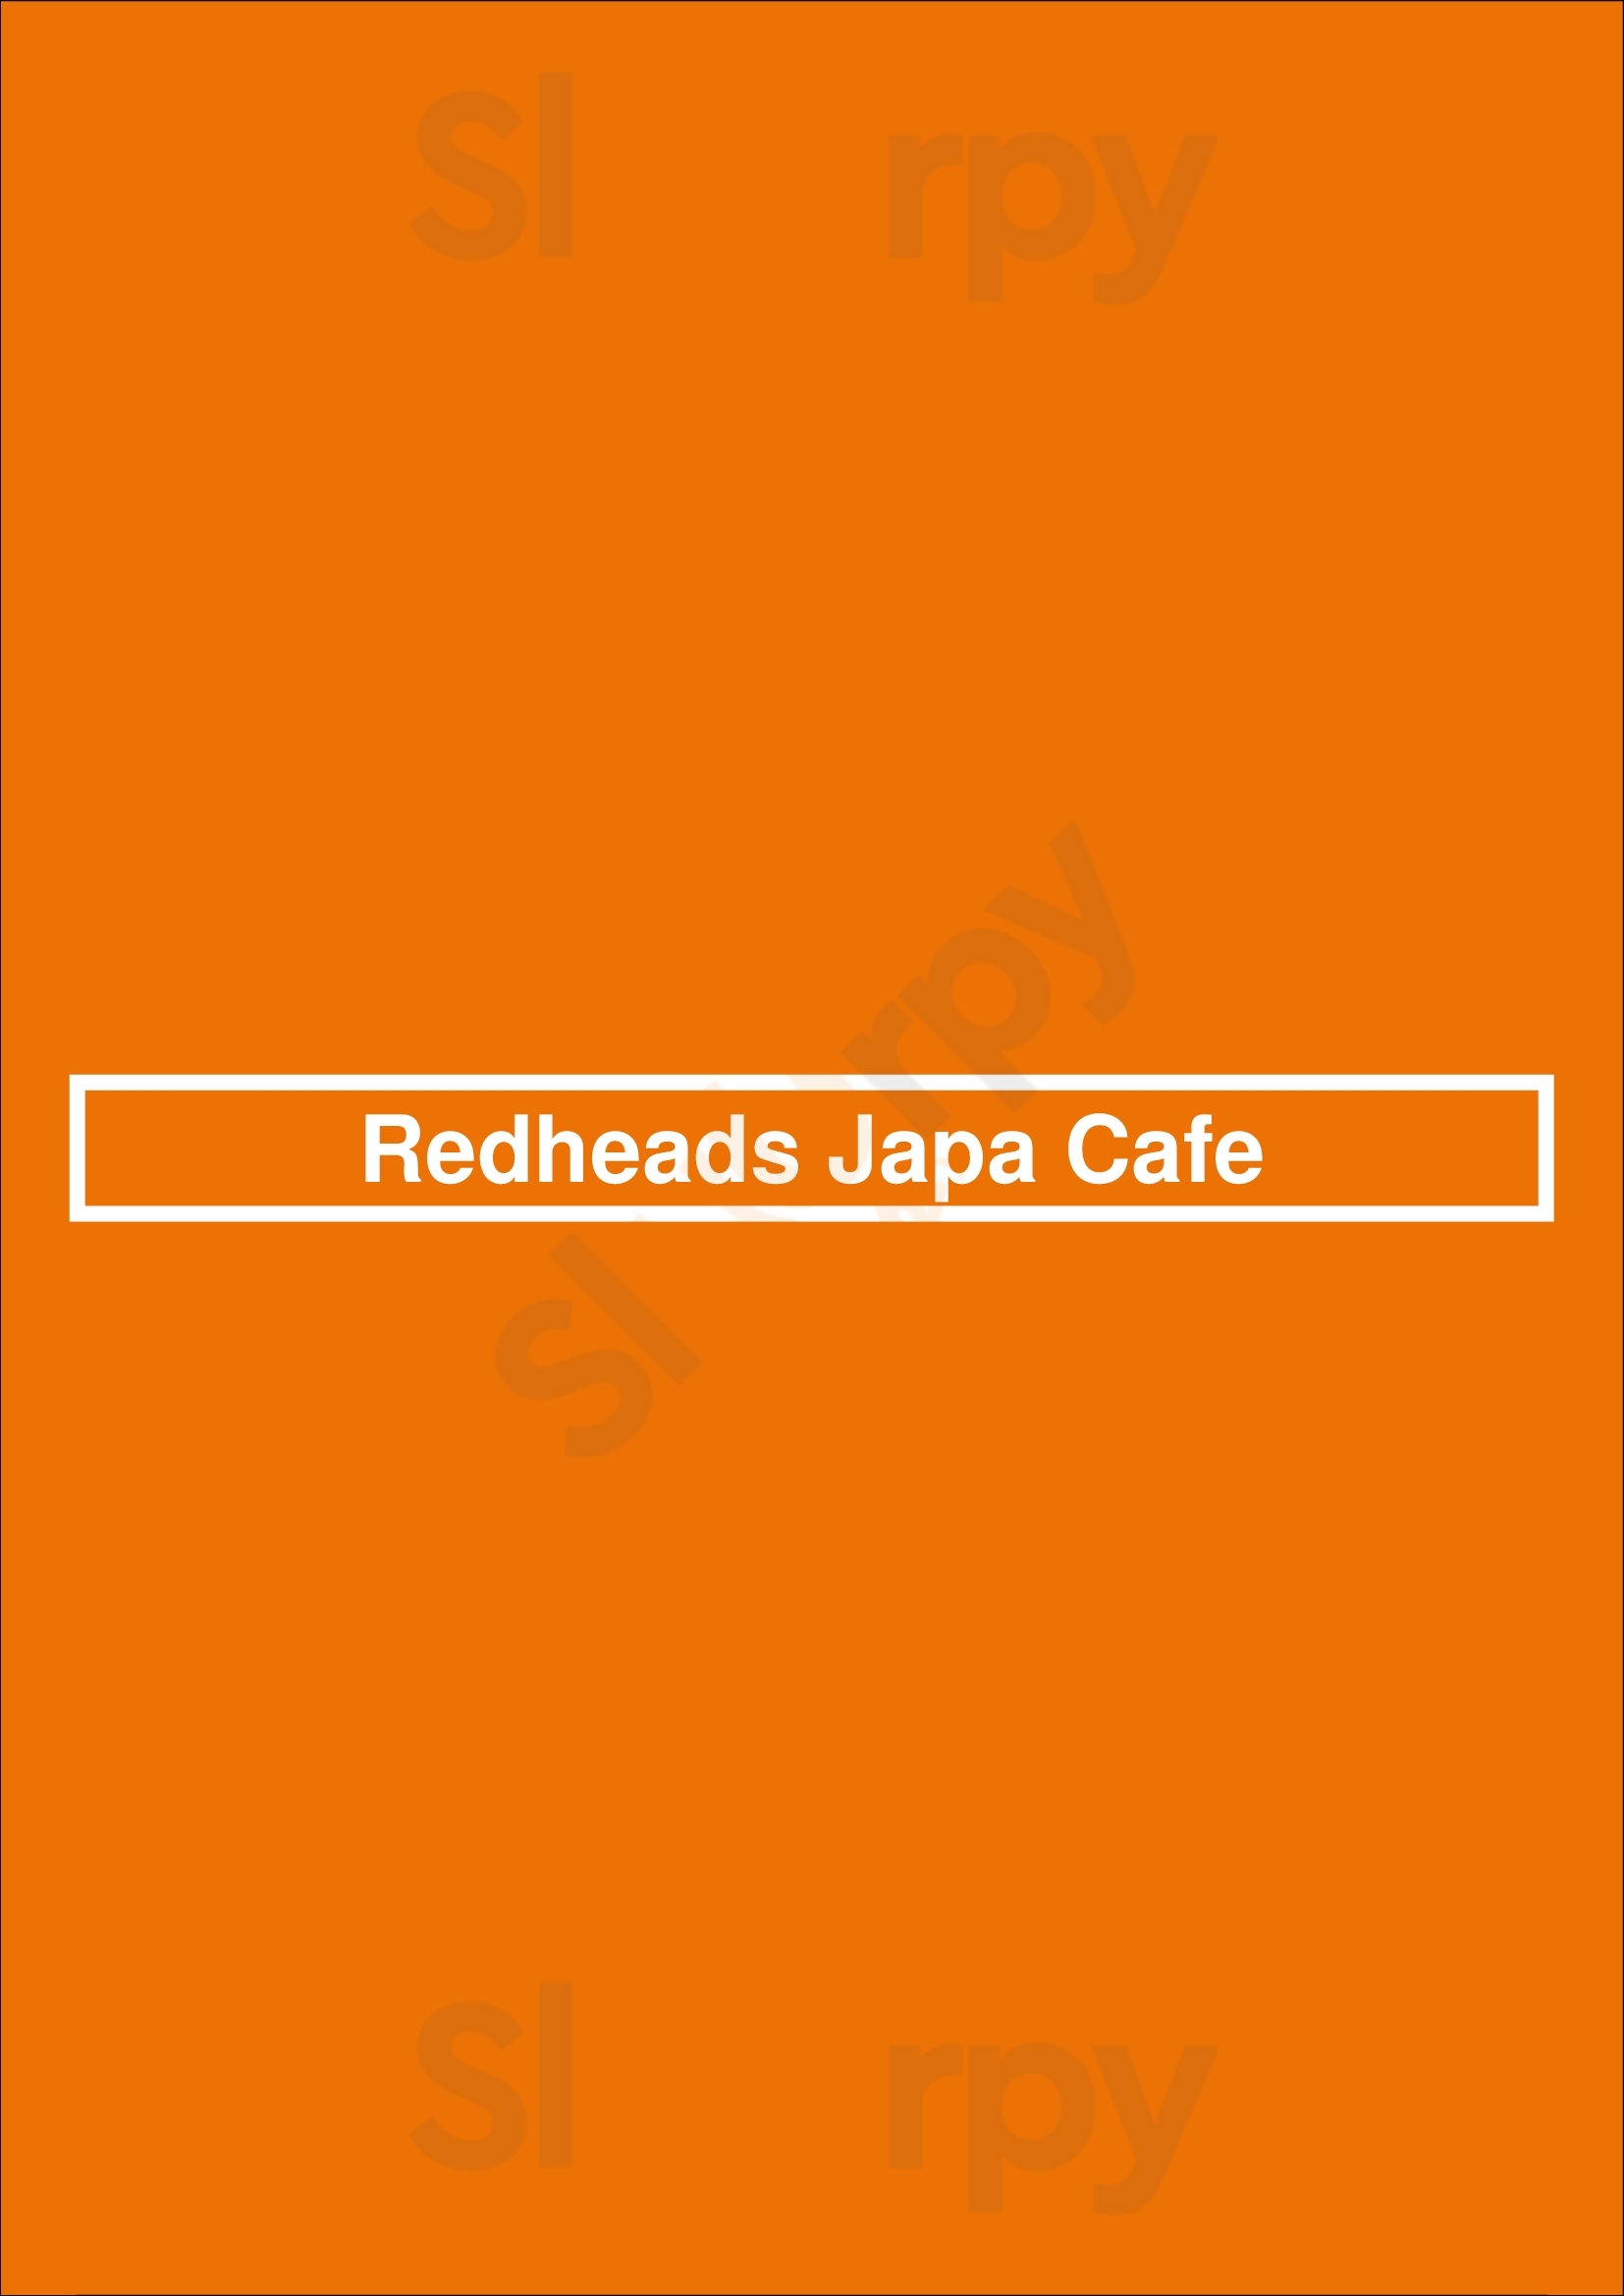 Redheads Japa Cafe Calgary Menu - 1